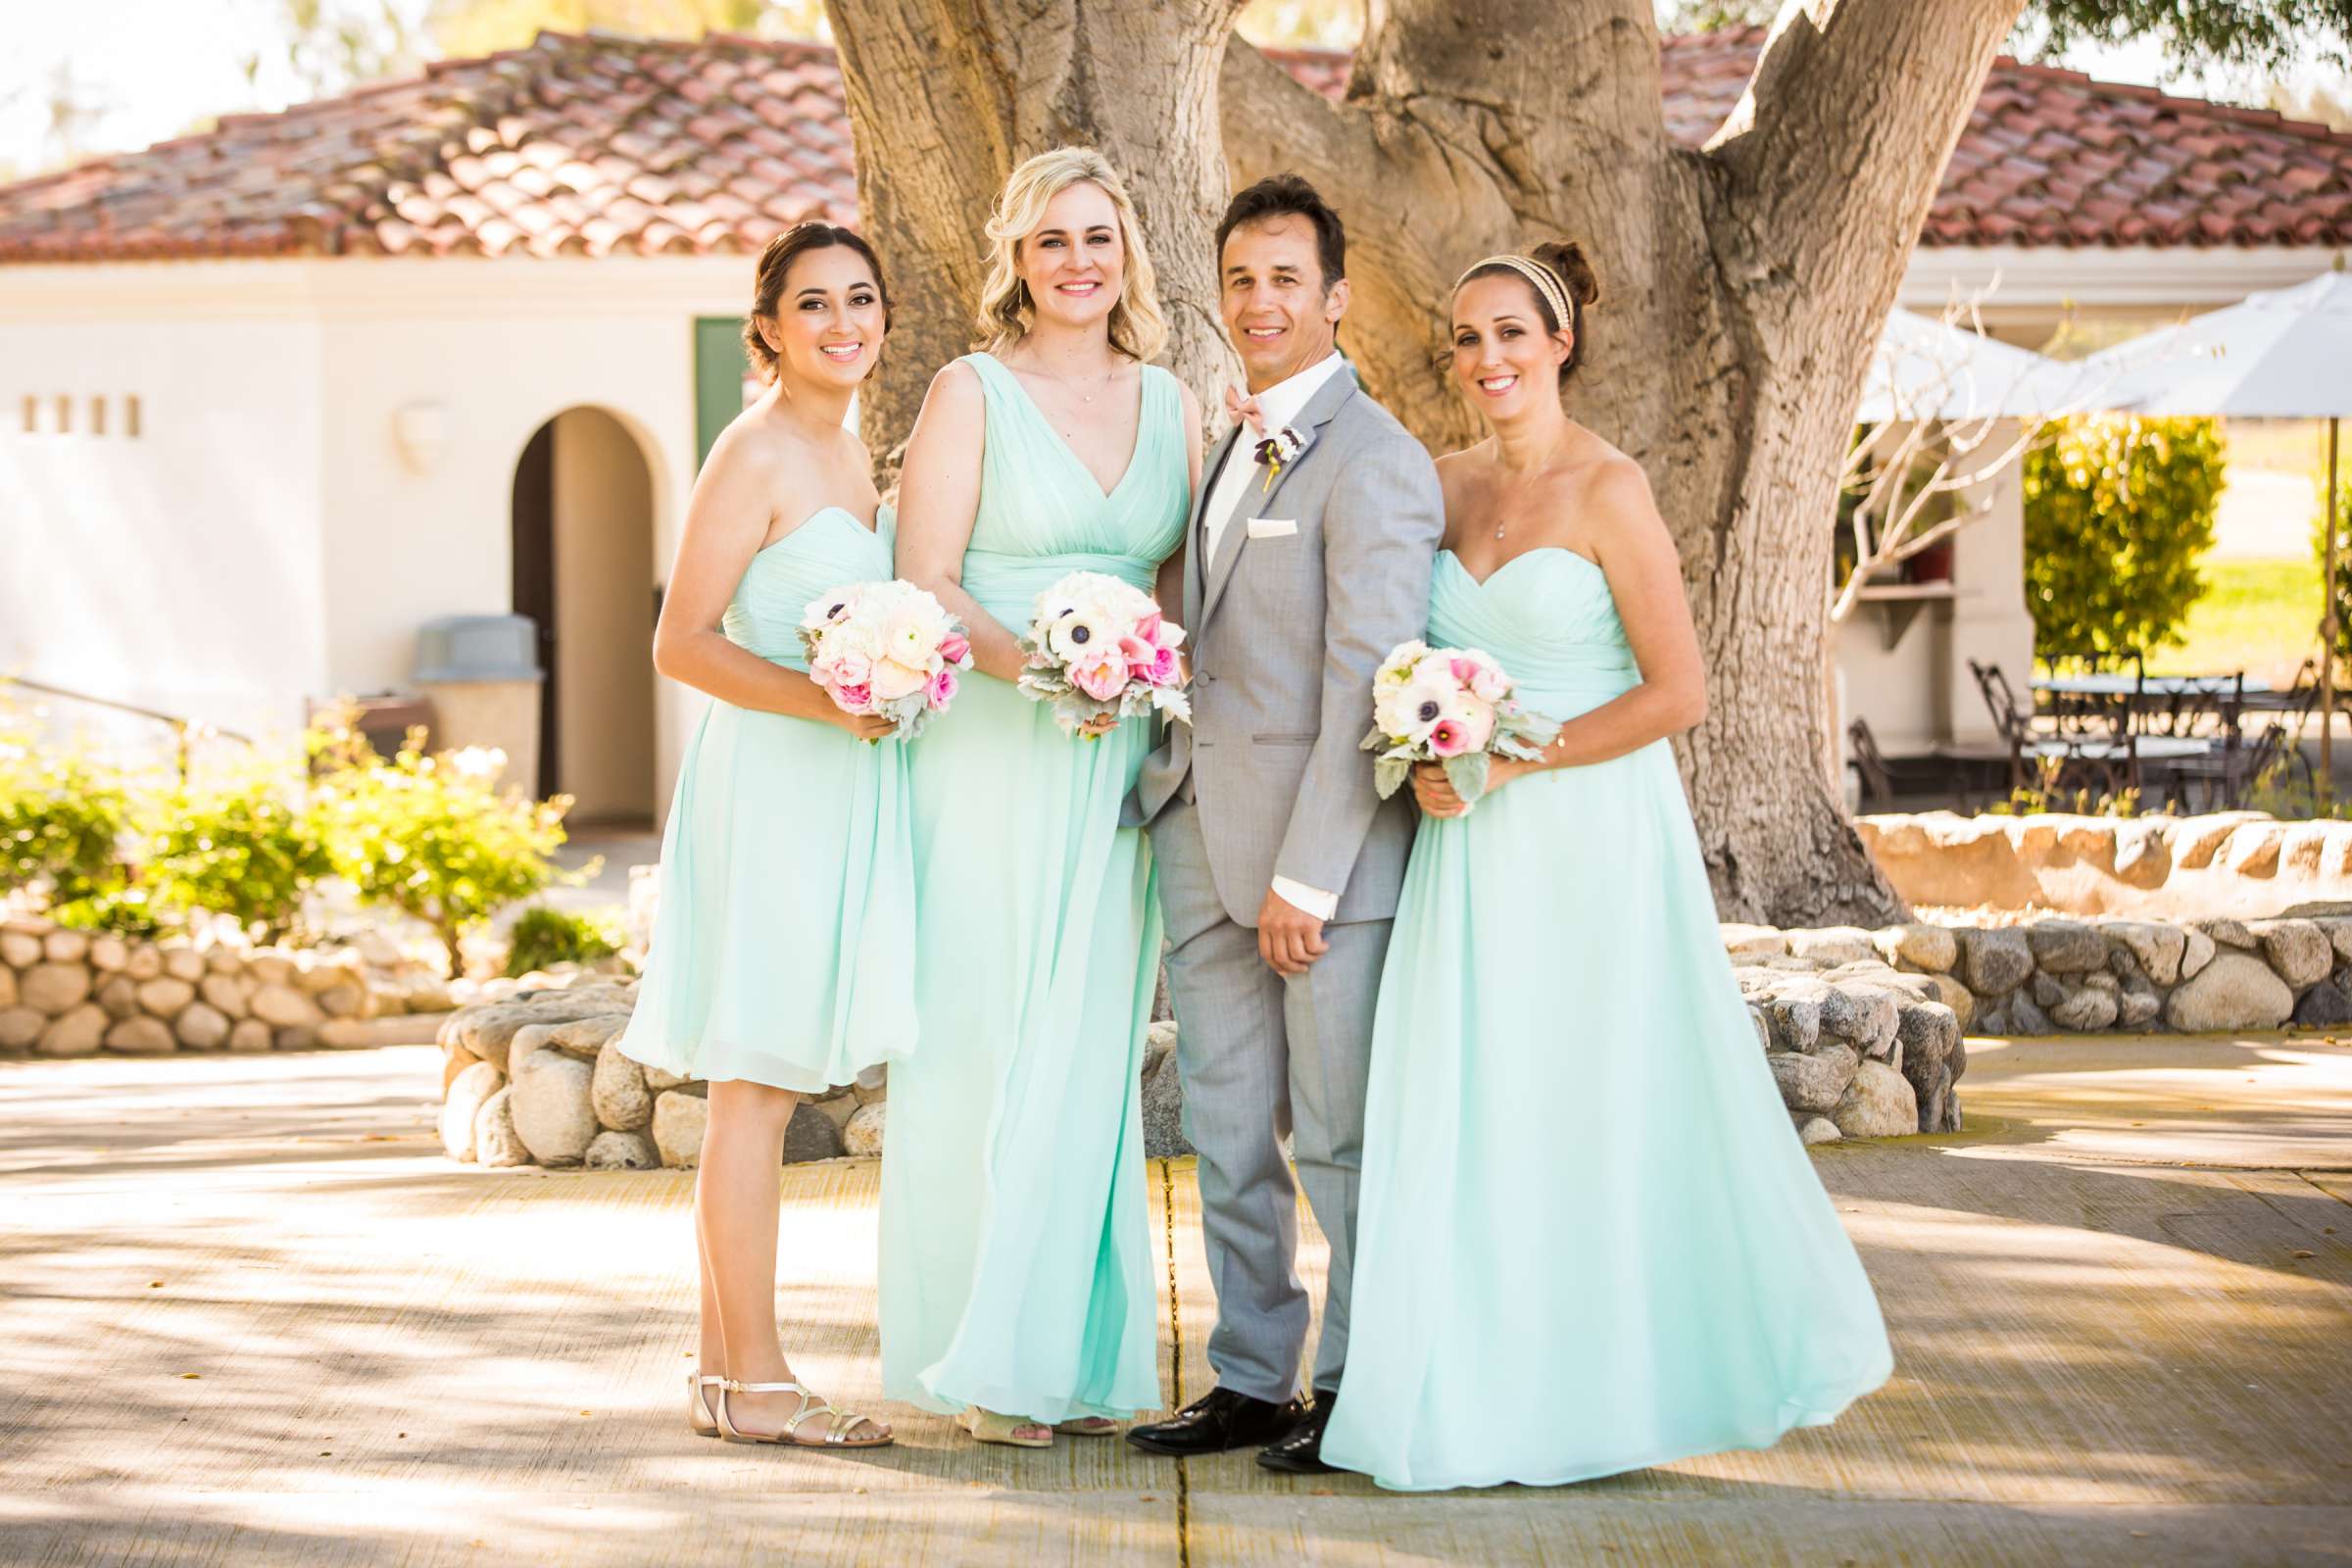 Rancho Santa Fe Golf Club Wedding coordinated by Monarch Weddings, Carolynn and Jon Wedding Photo #56 by True Photography